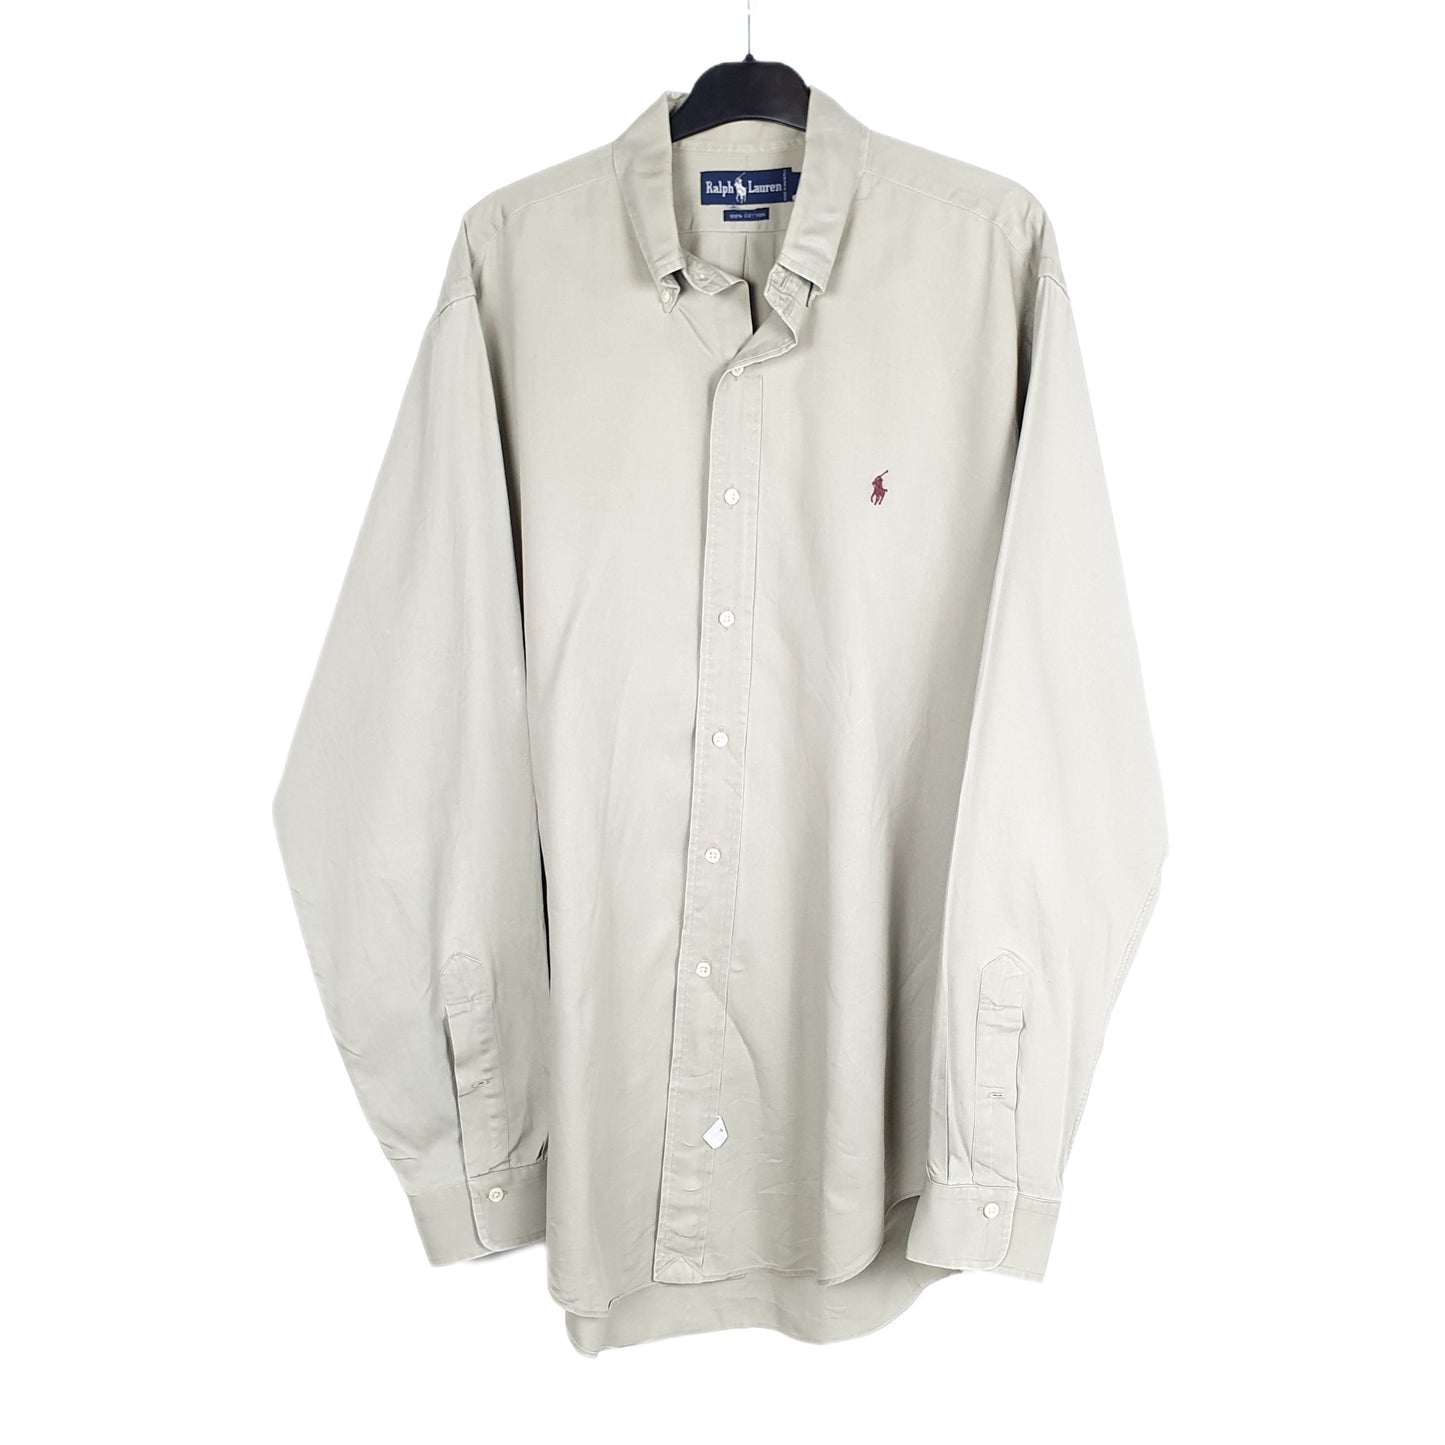 Grey Polo Ralph Lauren Long Sleeve Shirt